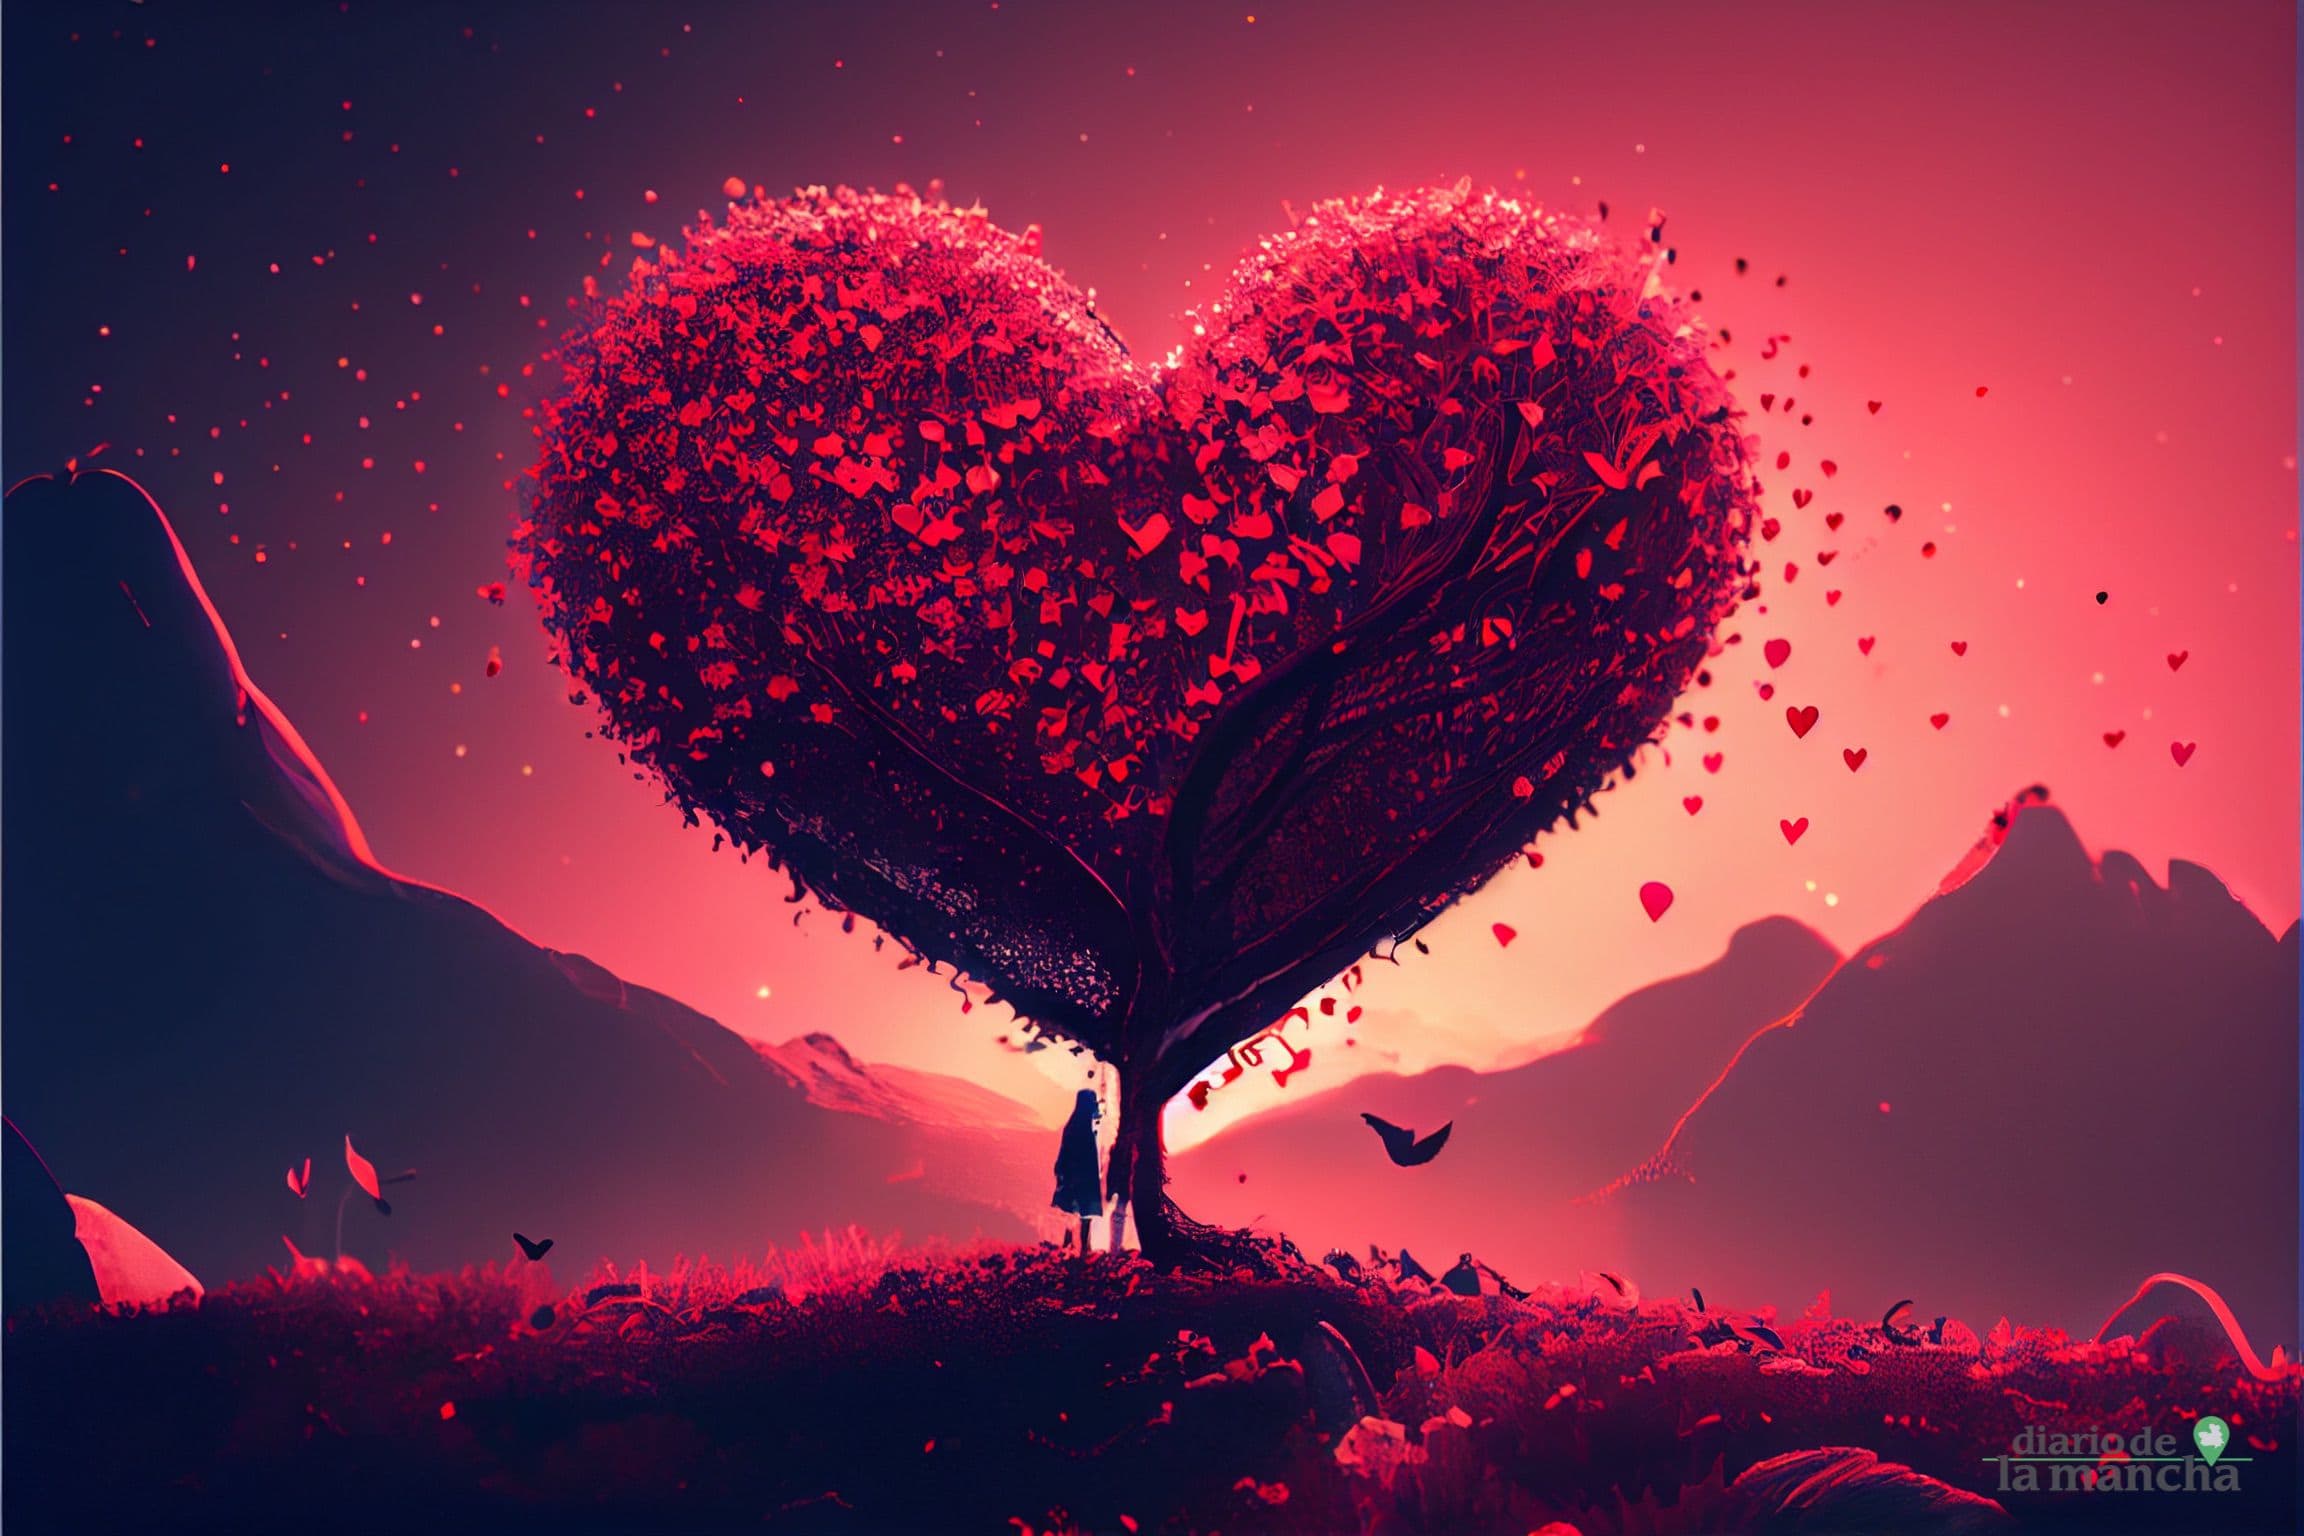 Fondos de pantalla para compartir corazones de San Valetín 2